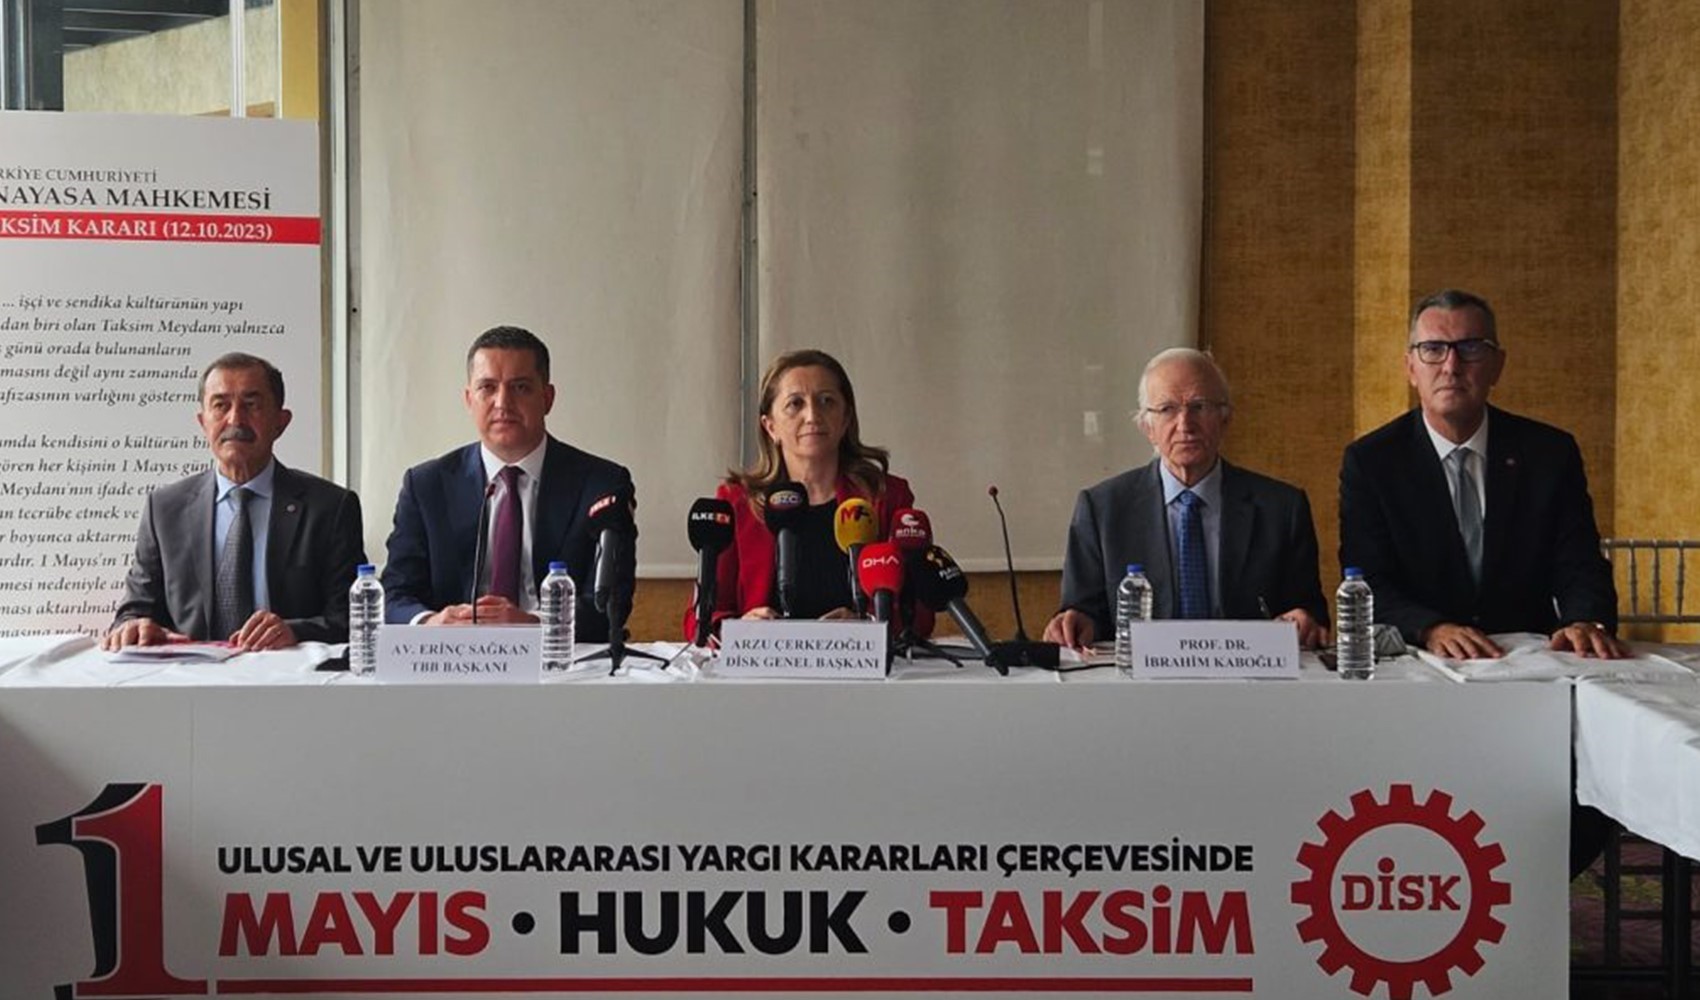 DİSK Başkanı Arzu Çerkezoğlu'ndan Vali'ye yanıt: 'Taksim bizimdir!'